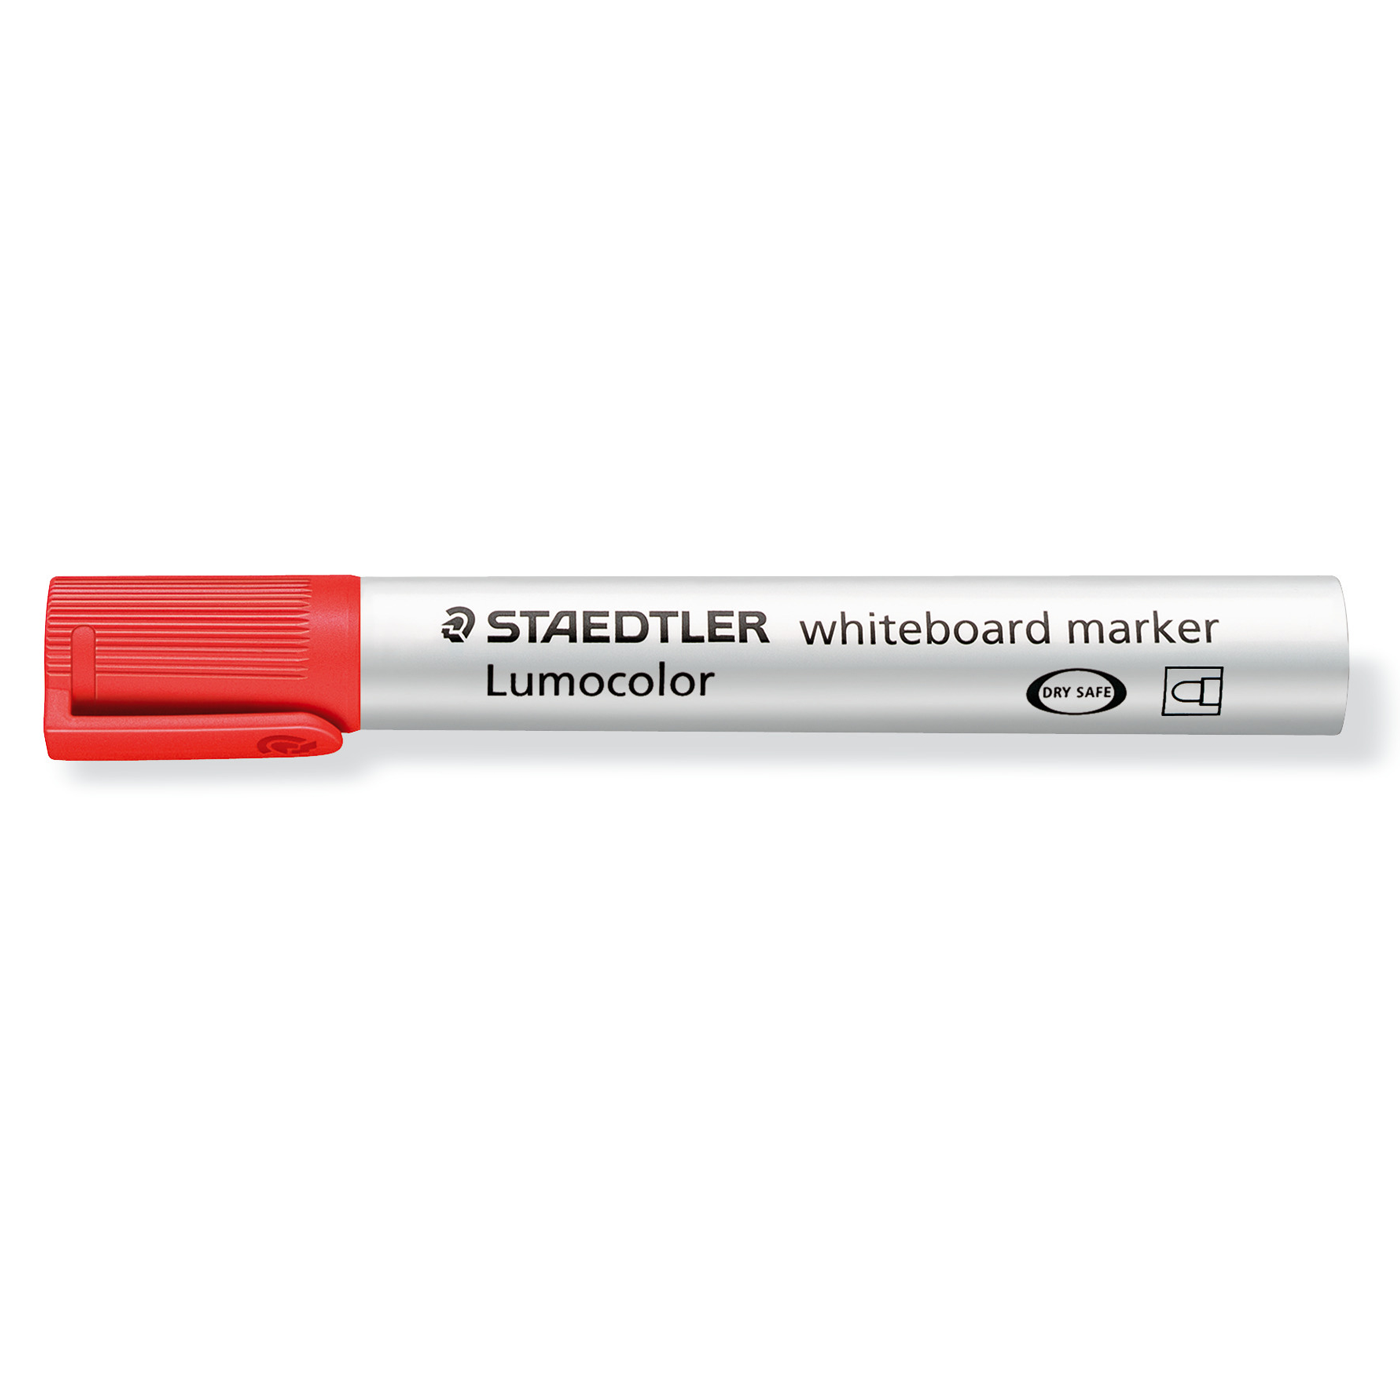 Staedtler Whiteboard Marker Lumocolor Bullet Tip Red